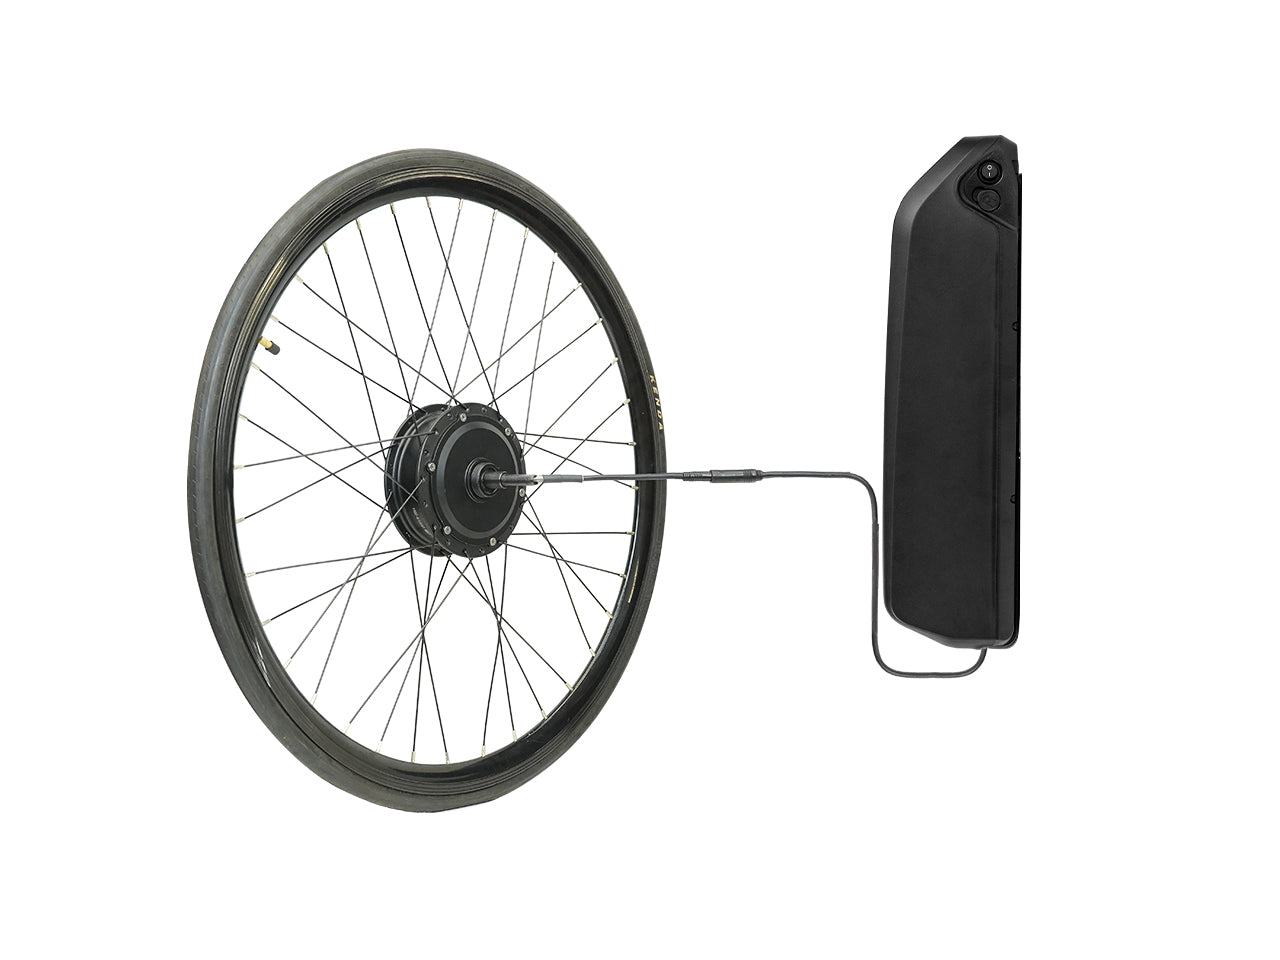 Kit de conversión de bicicleta eléctrica Serie KH